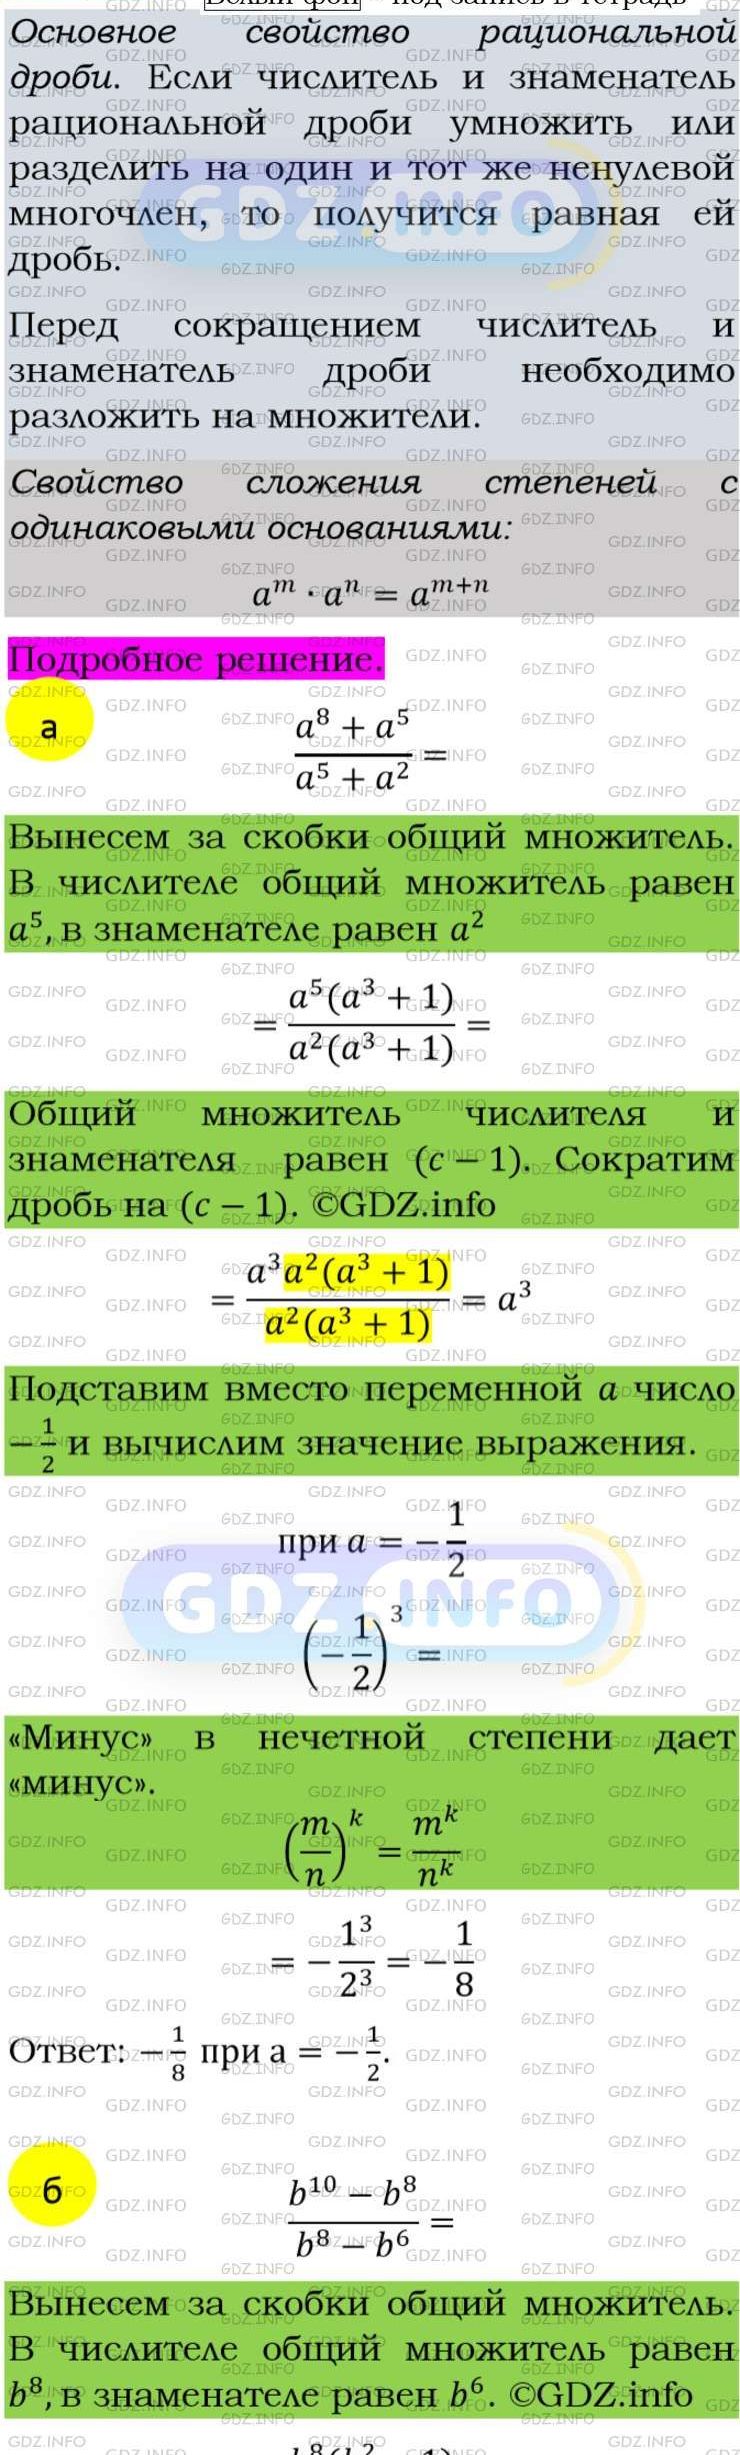 Фото подробного решения: Номер задания №45 из ГДЗ по Алгебре 8 класс: Макарычев Ю.Н.